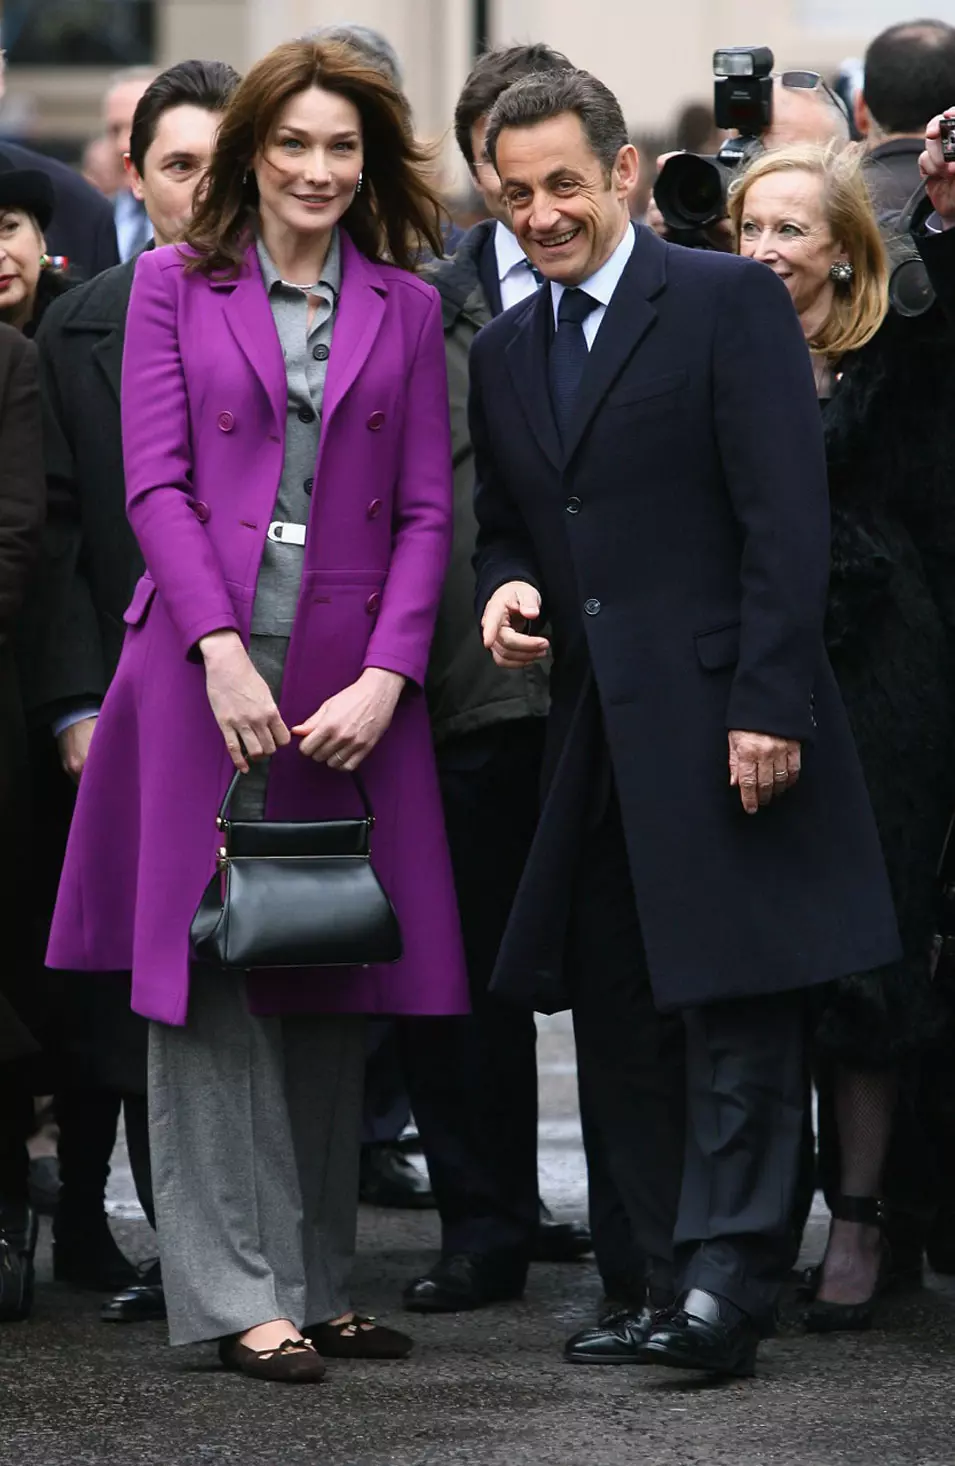 קרלה ברוני סרקוזי ונשיא צרפת ניקולא סרקוזי בטקס הנחת זר בפסל דה גול, 27 מרץ 2008, לונדון, במסגרת ביקור בן יומיים בבירה הבריטית